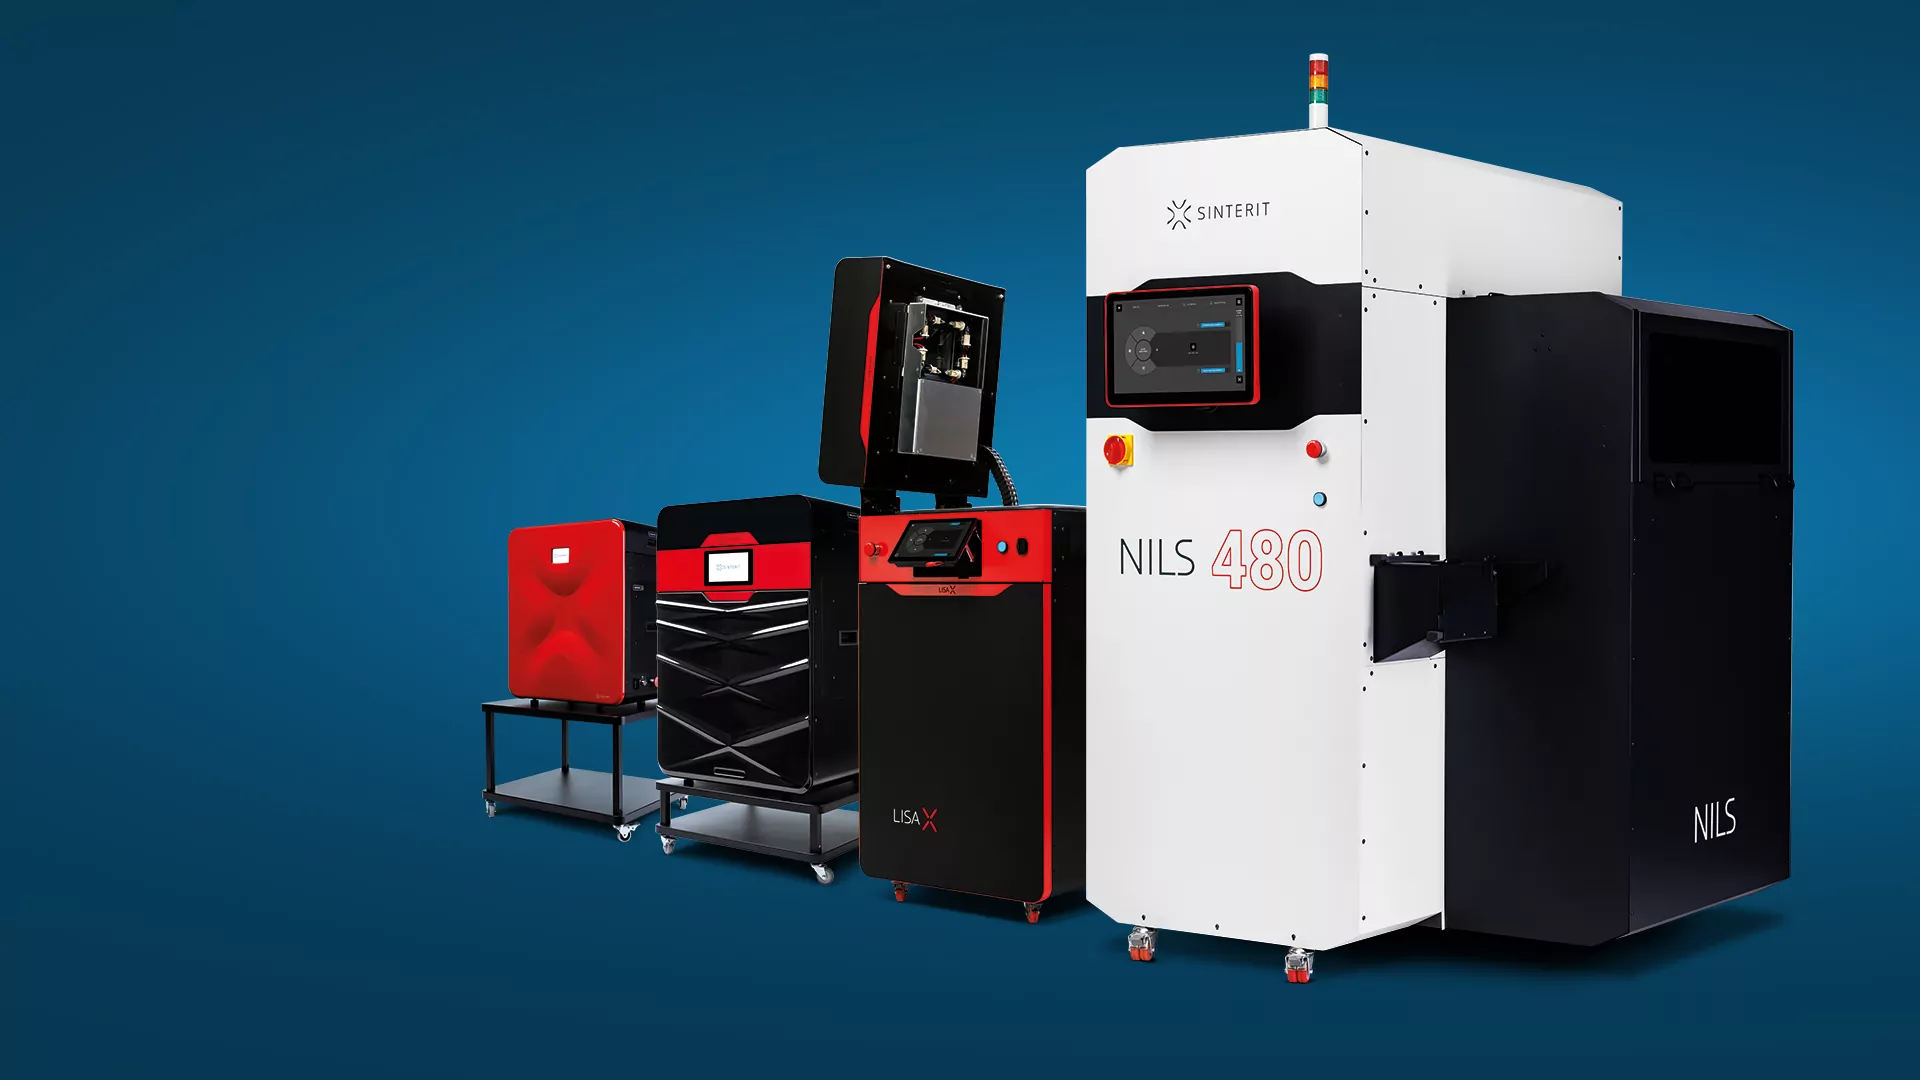 Skyldig Anden klasse Tæller insekter Sinterit - Manufacturer of compact and industrial SLS 3D printers